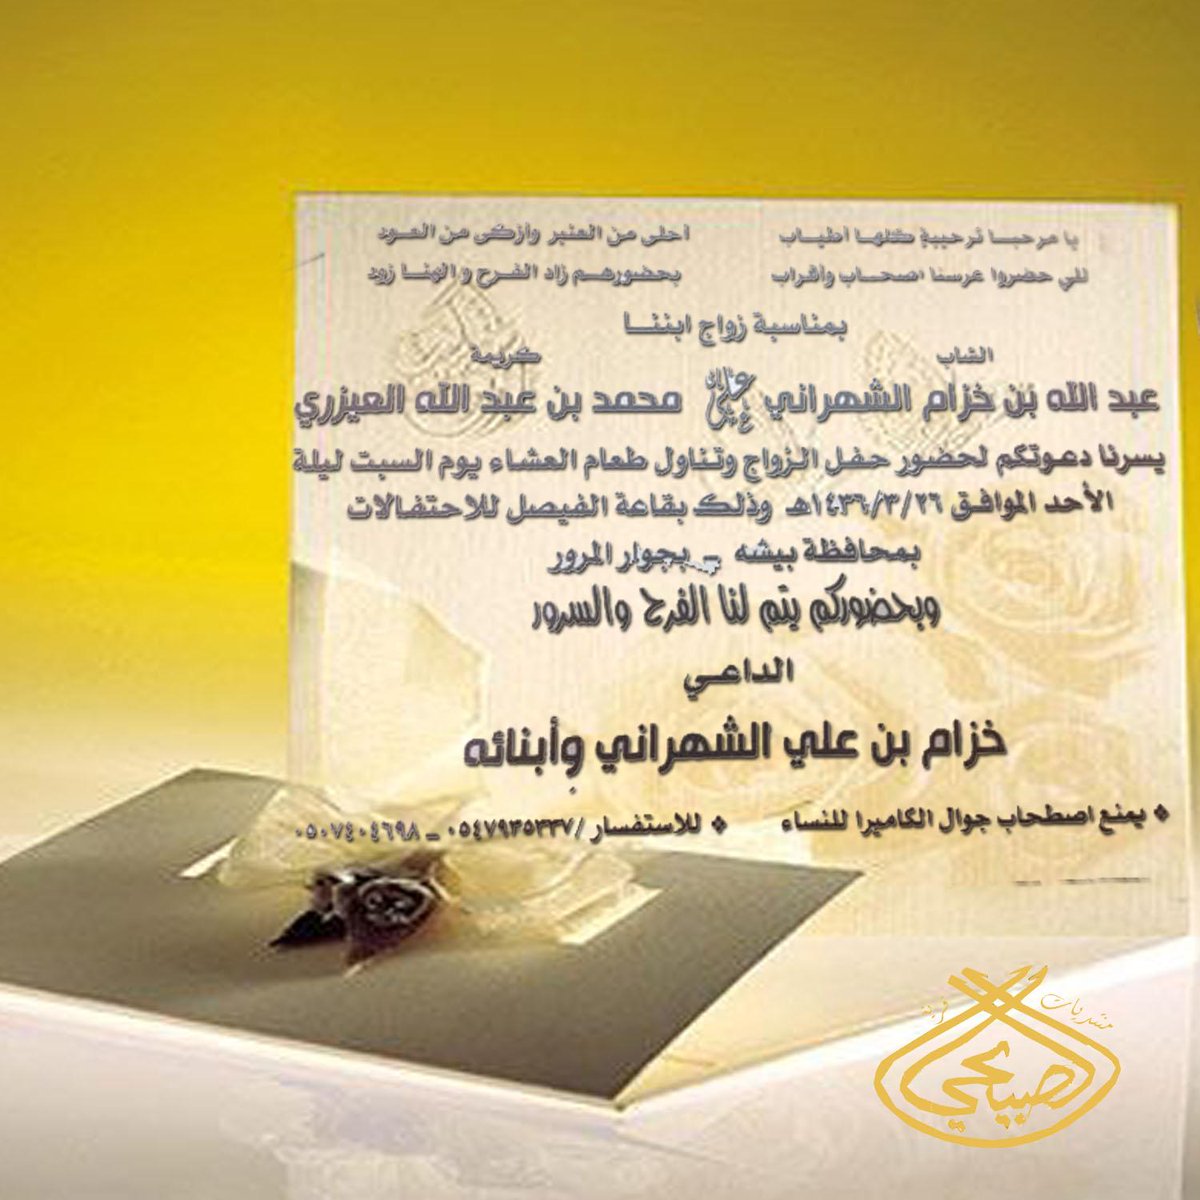 دعوة زواج آل حنيان B62LH6eIgAEM3q7